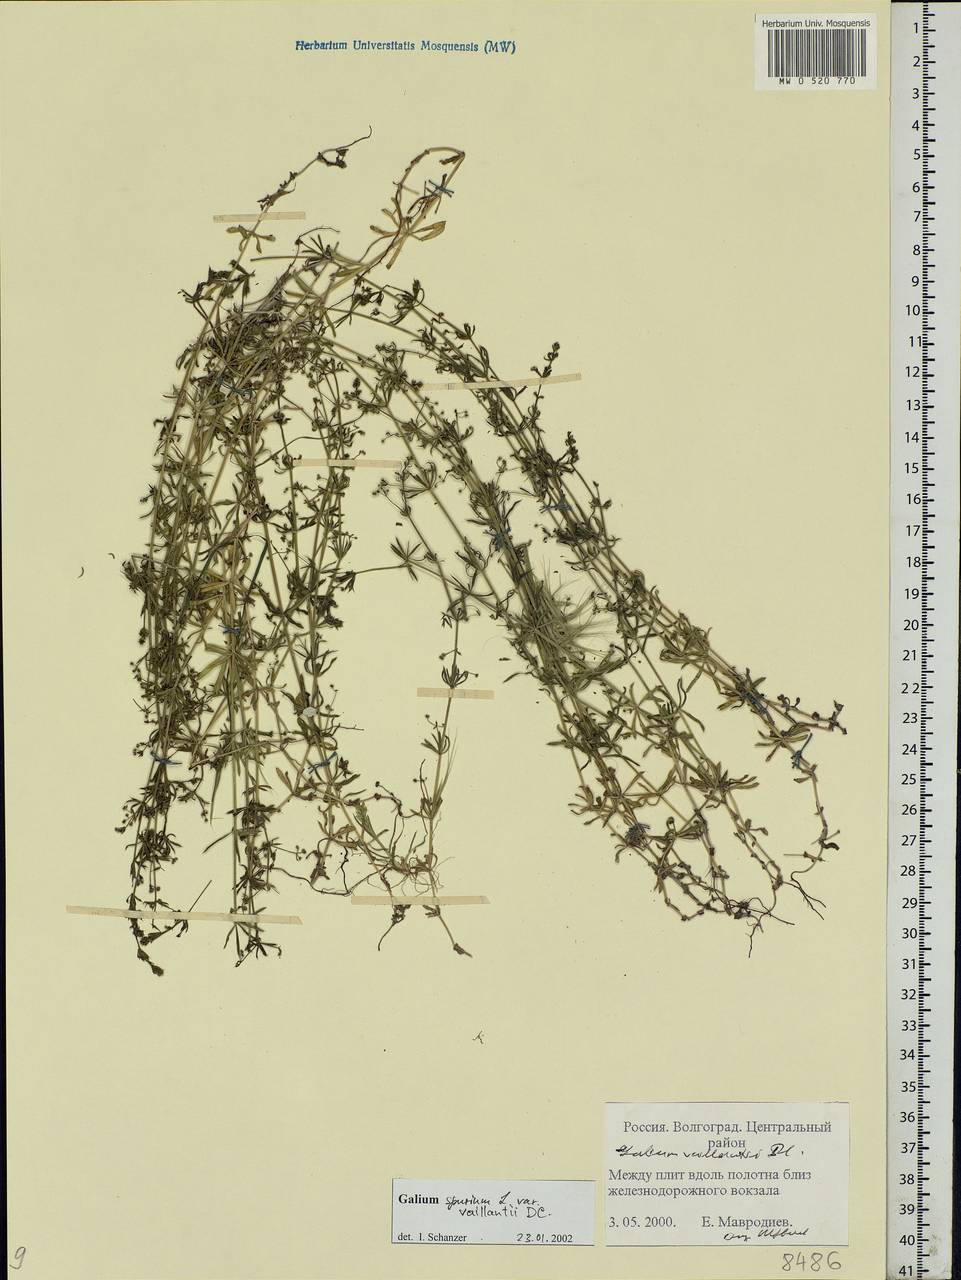 Galium spurium L., Eastern Europe, Lower Volga region (E9) (Russia)